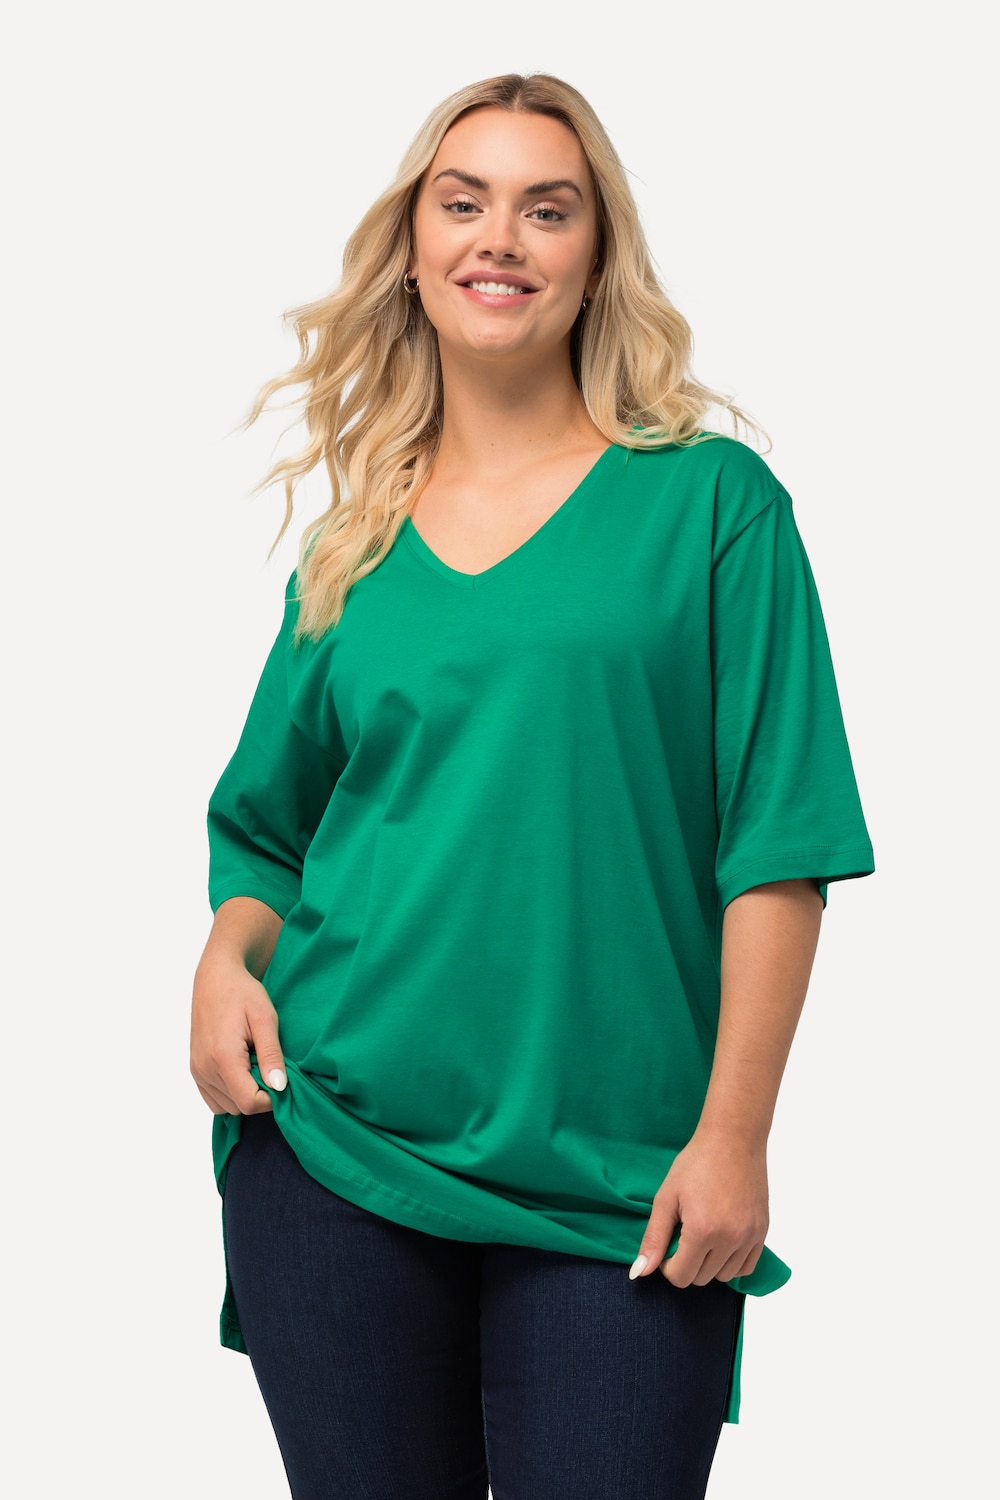 Grote Maten T-Shirt, Dames, groen, Maat: 46/48, Katoen/Viscose, Ulla Popken